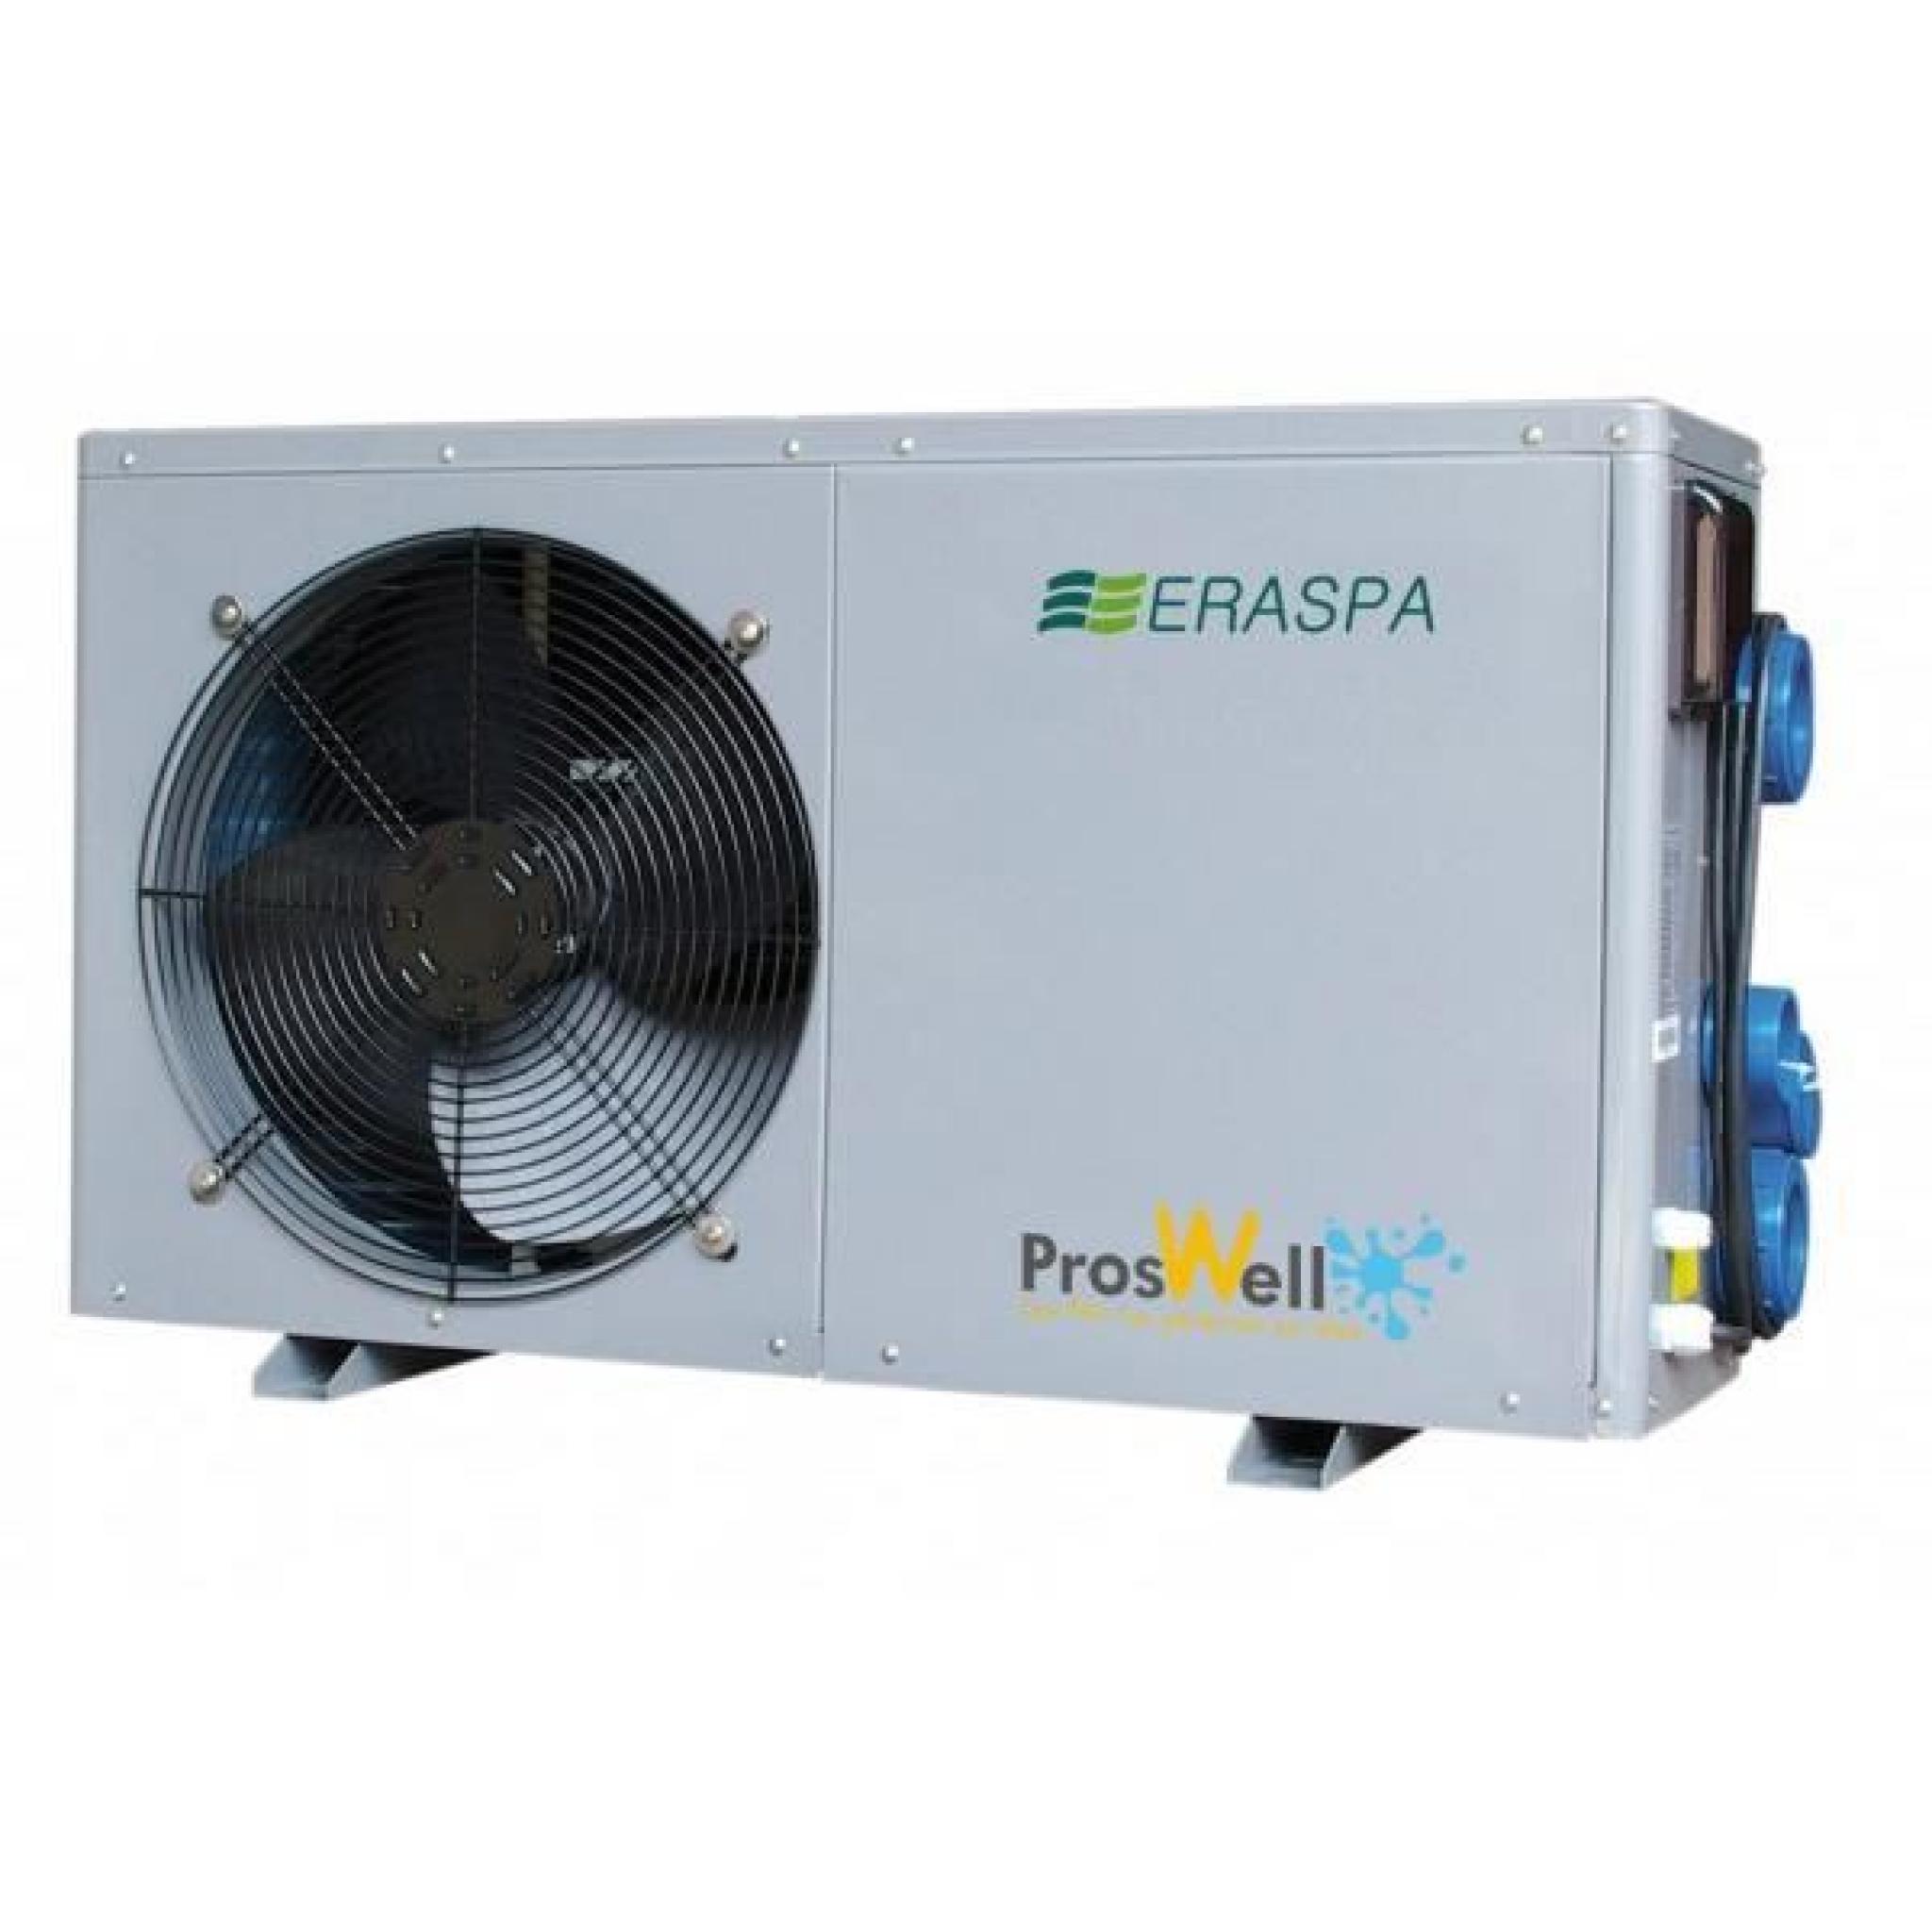 Pompe à chaleur Proswell Eraspa - 6,50 kW de 30 à 45 m3